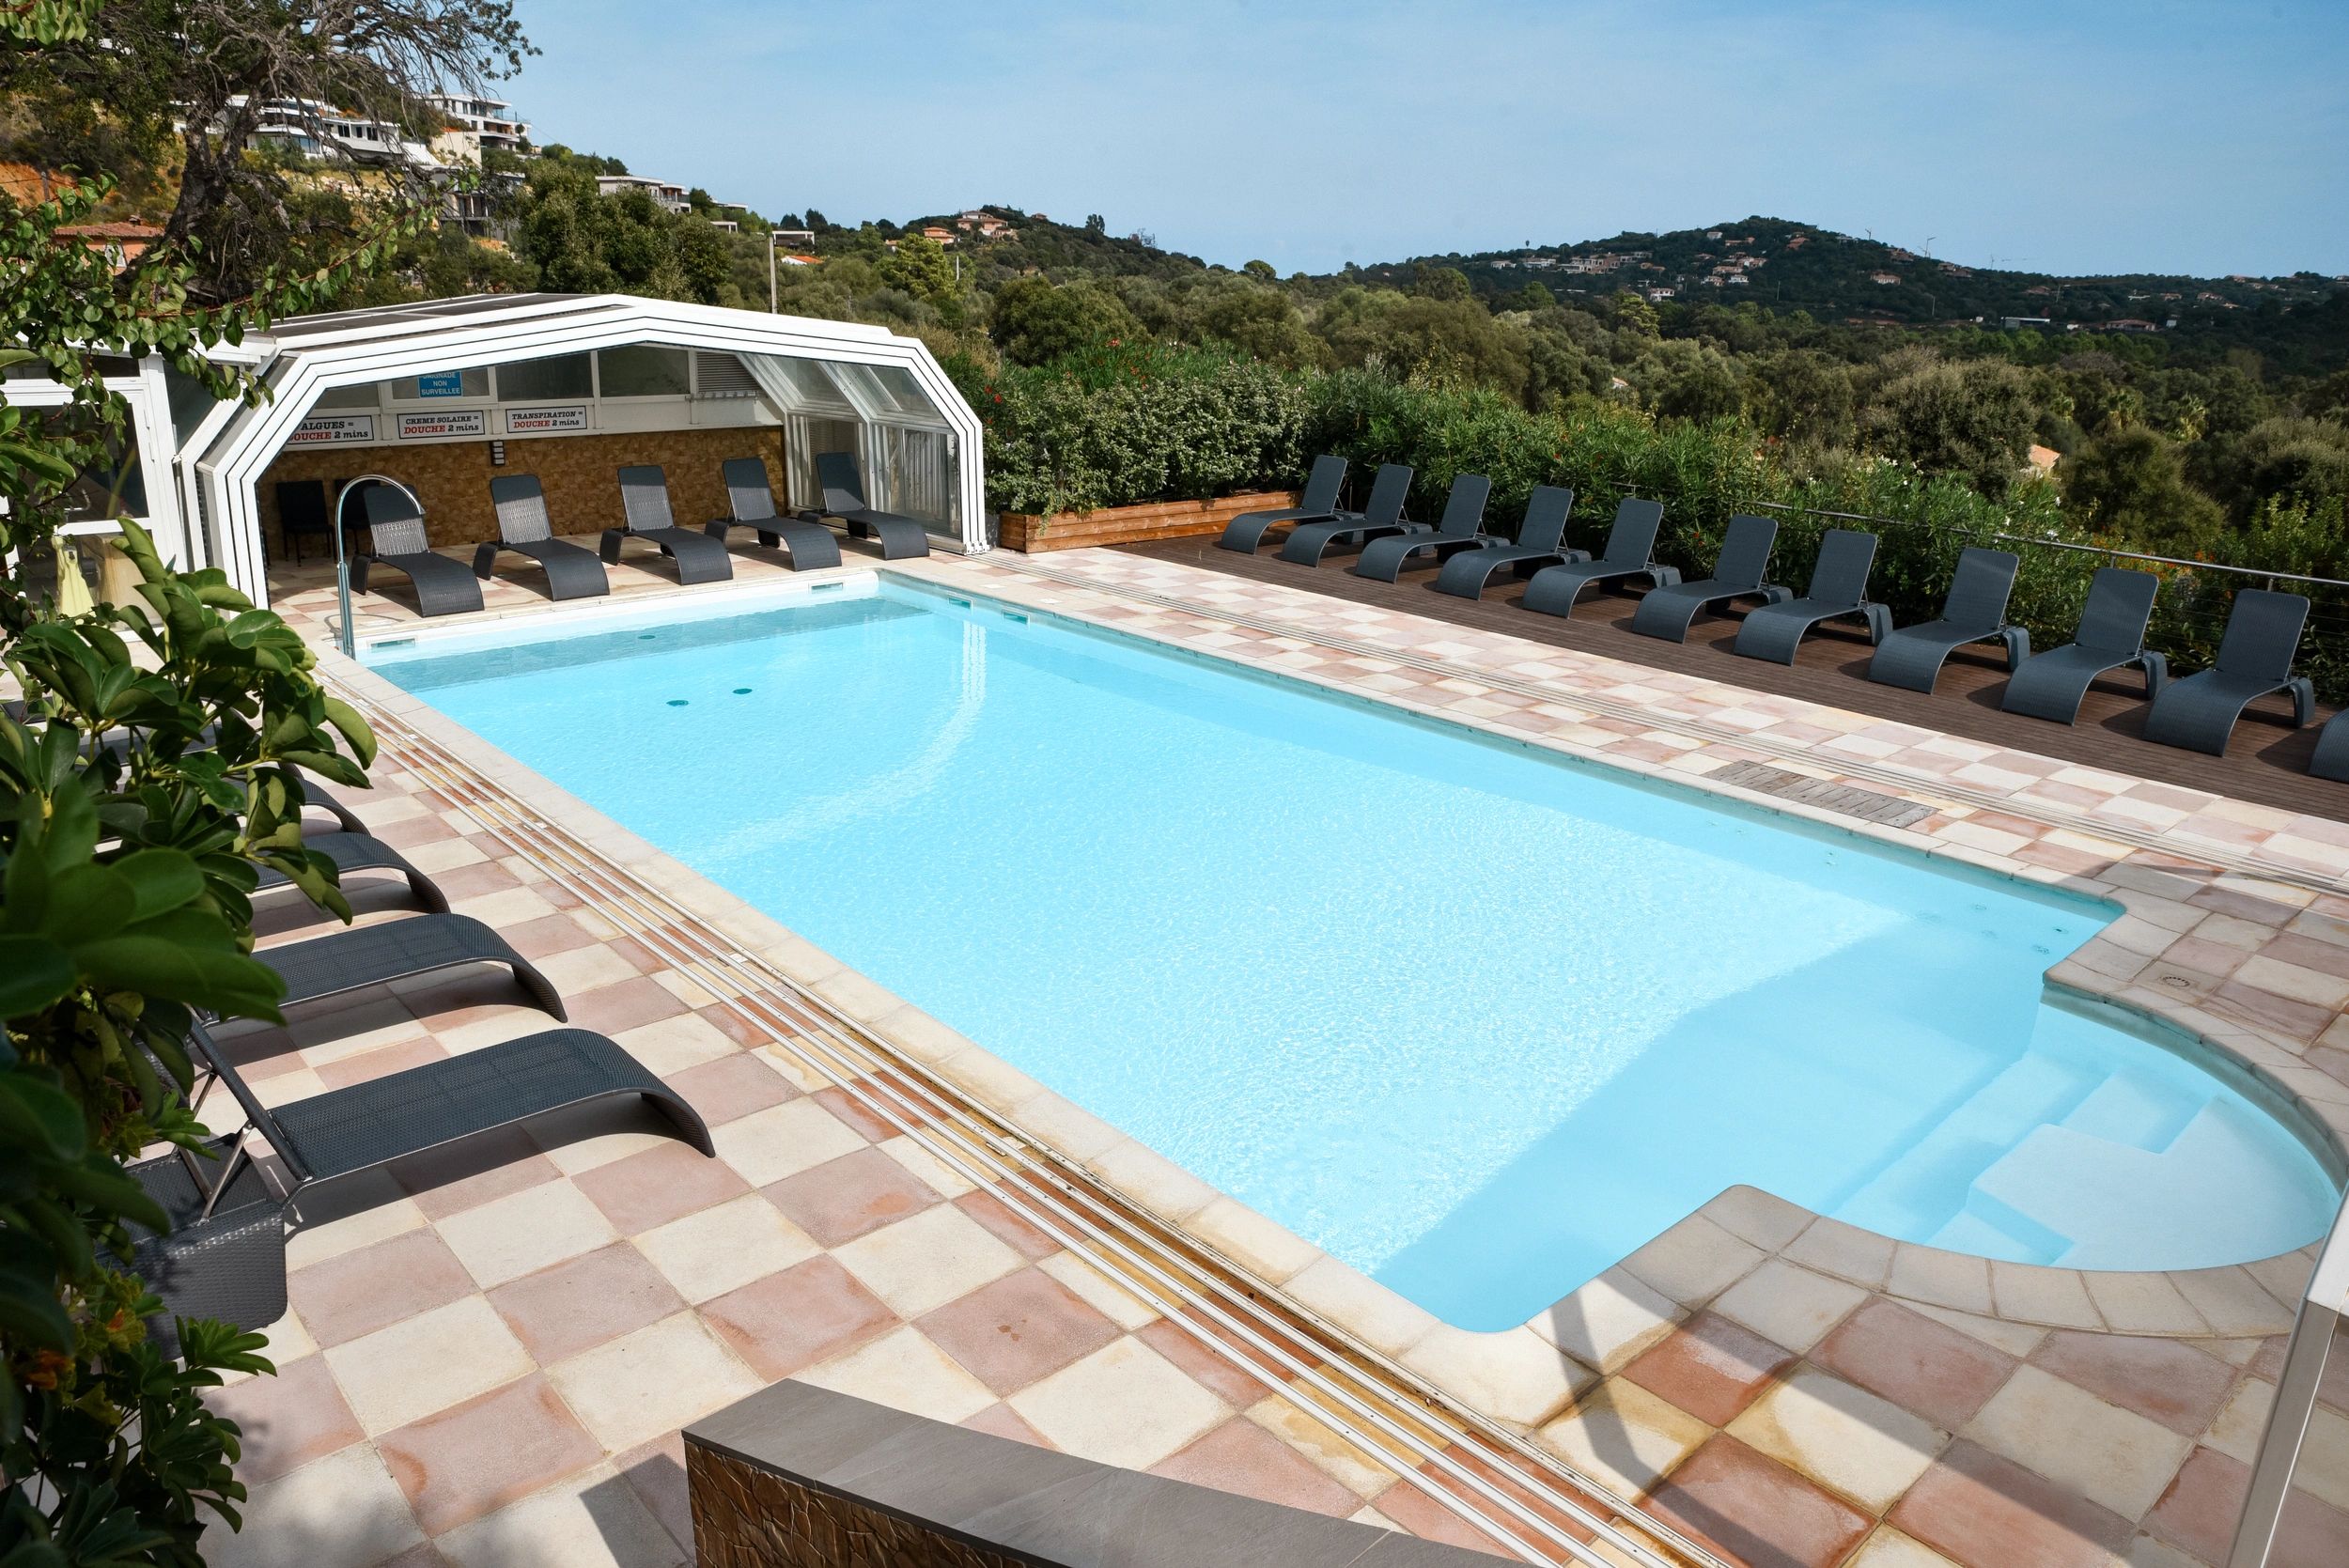 La piscine chauffée au sein de la résidence 4 étoiles à Porto-Vecchio